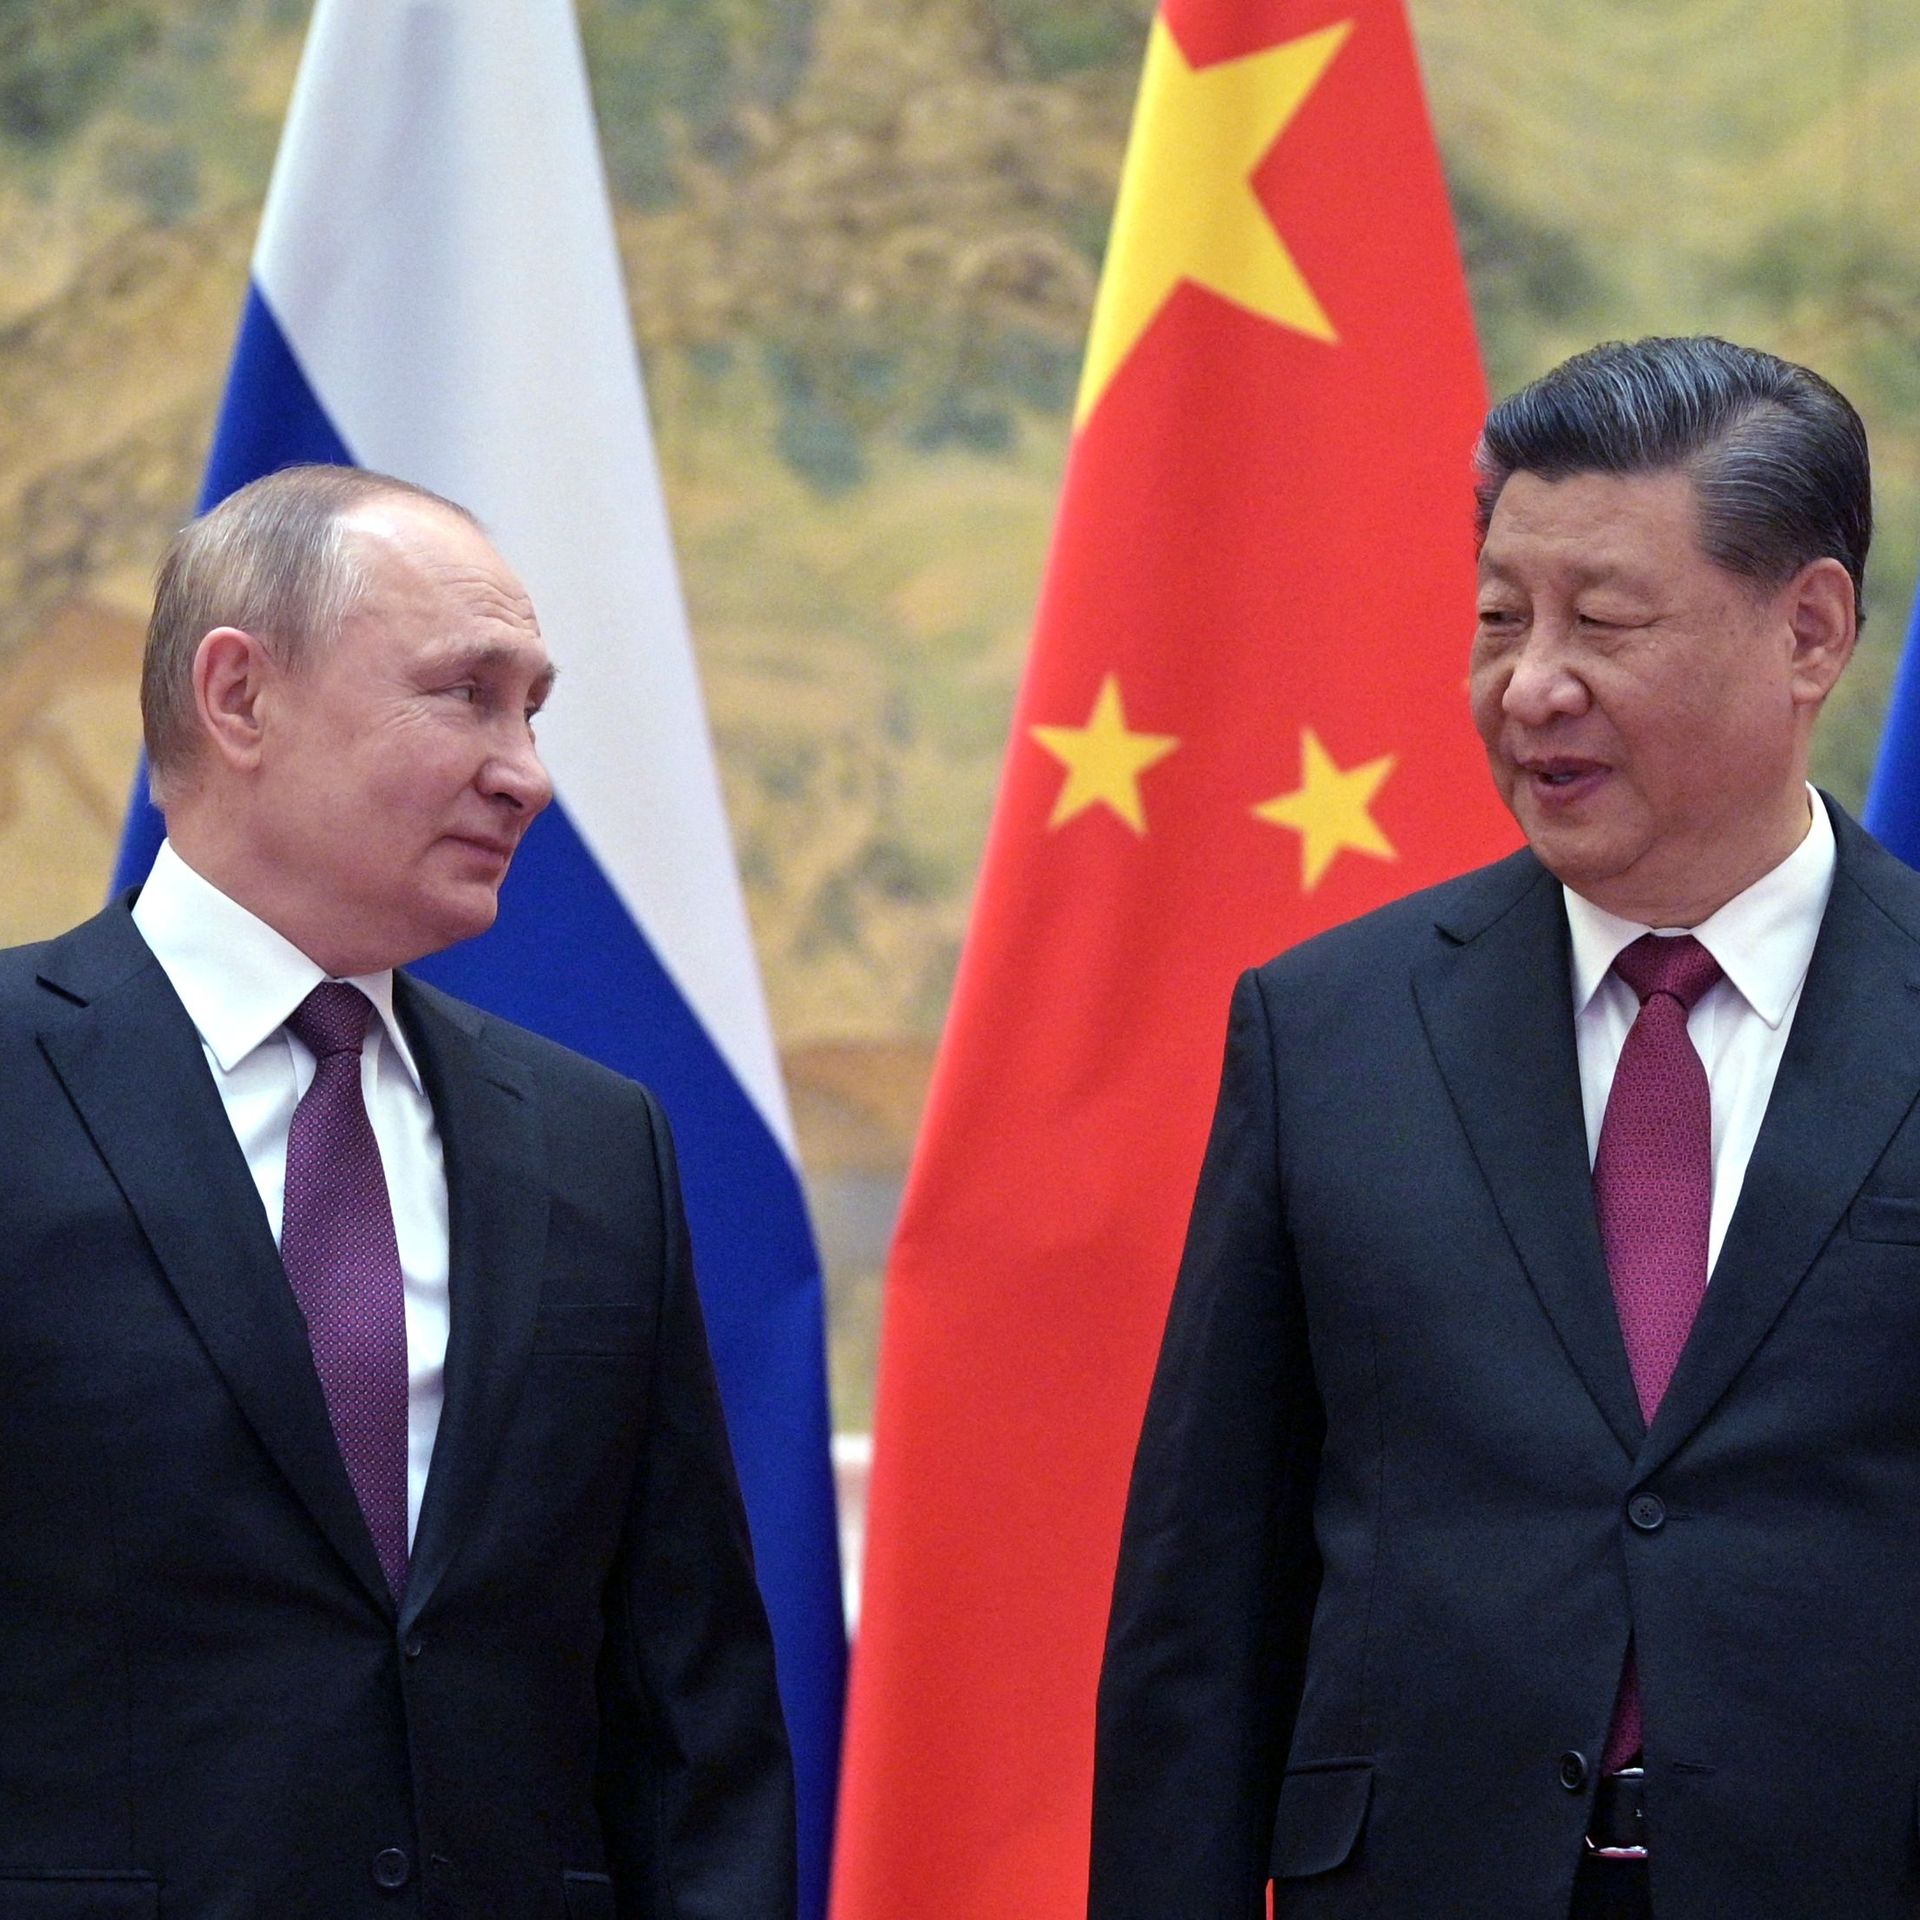 Xi backs Putin on NATO demands as leaders meet in Beijing